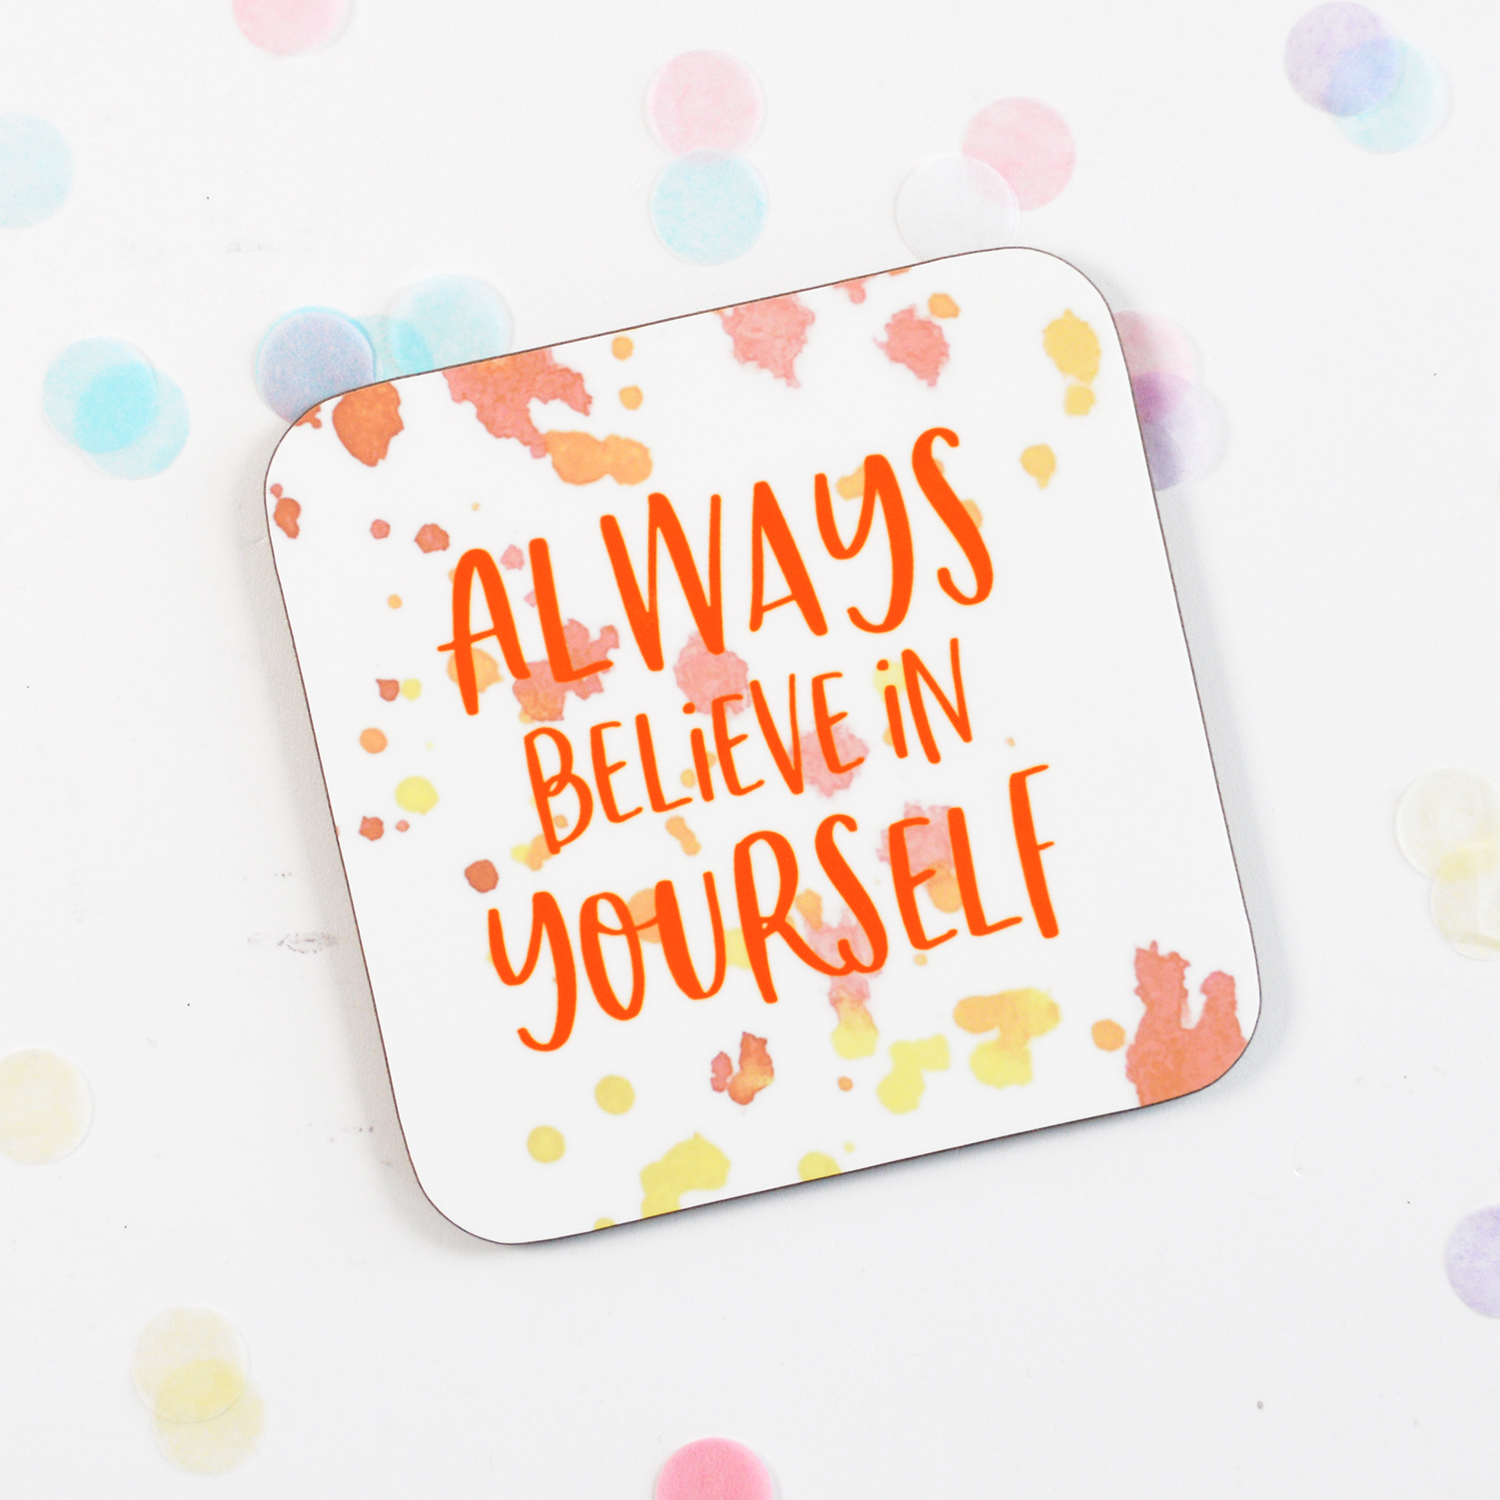 always_believe_in_yourself_sm